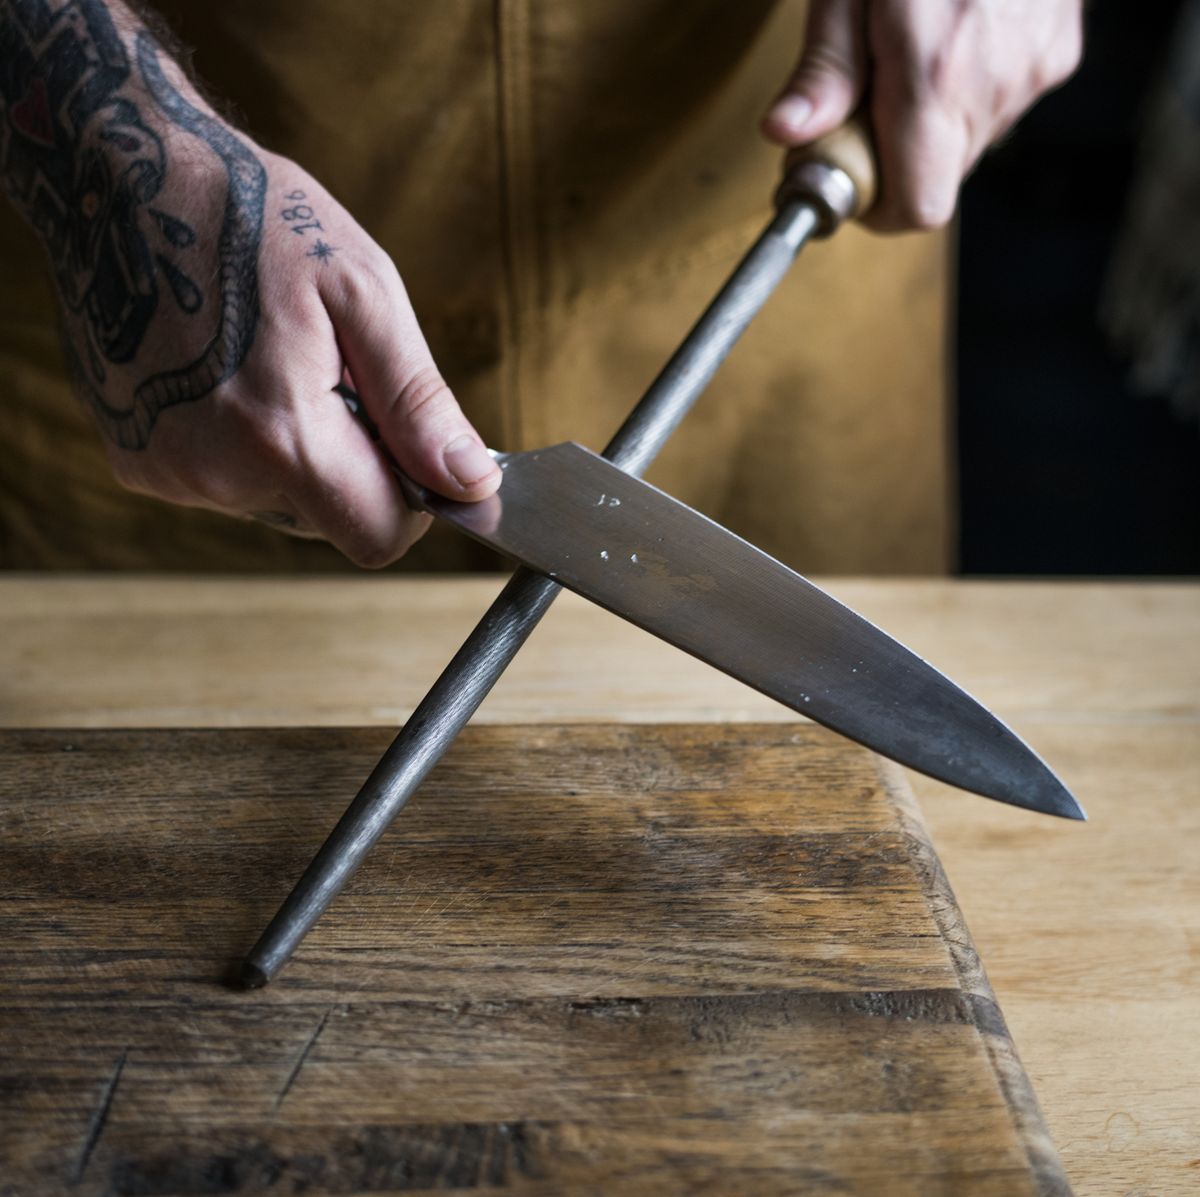 Gli errori da non fare MAI con i coltelli in cucina